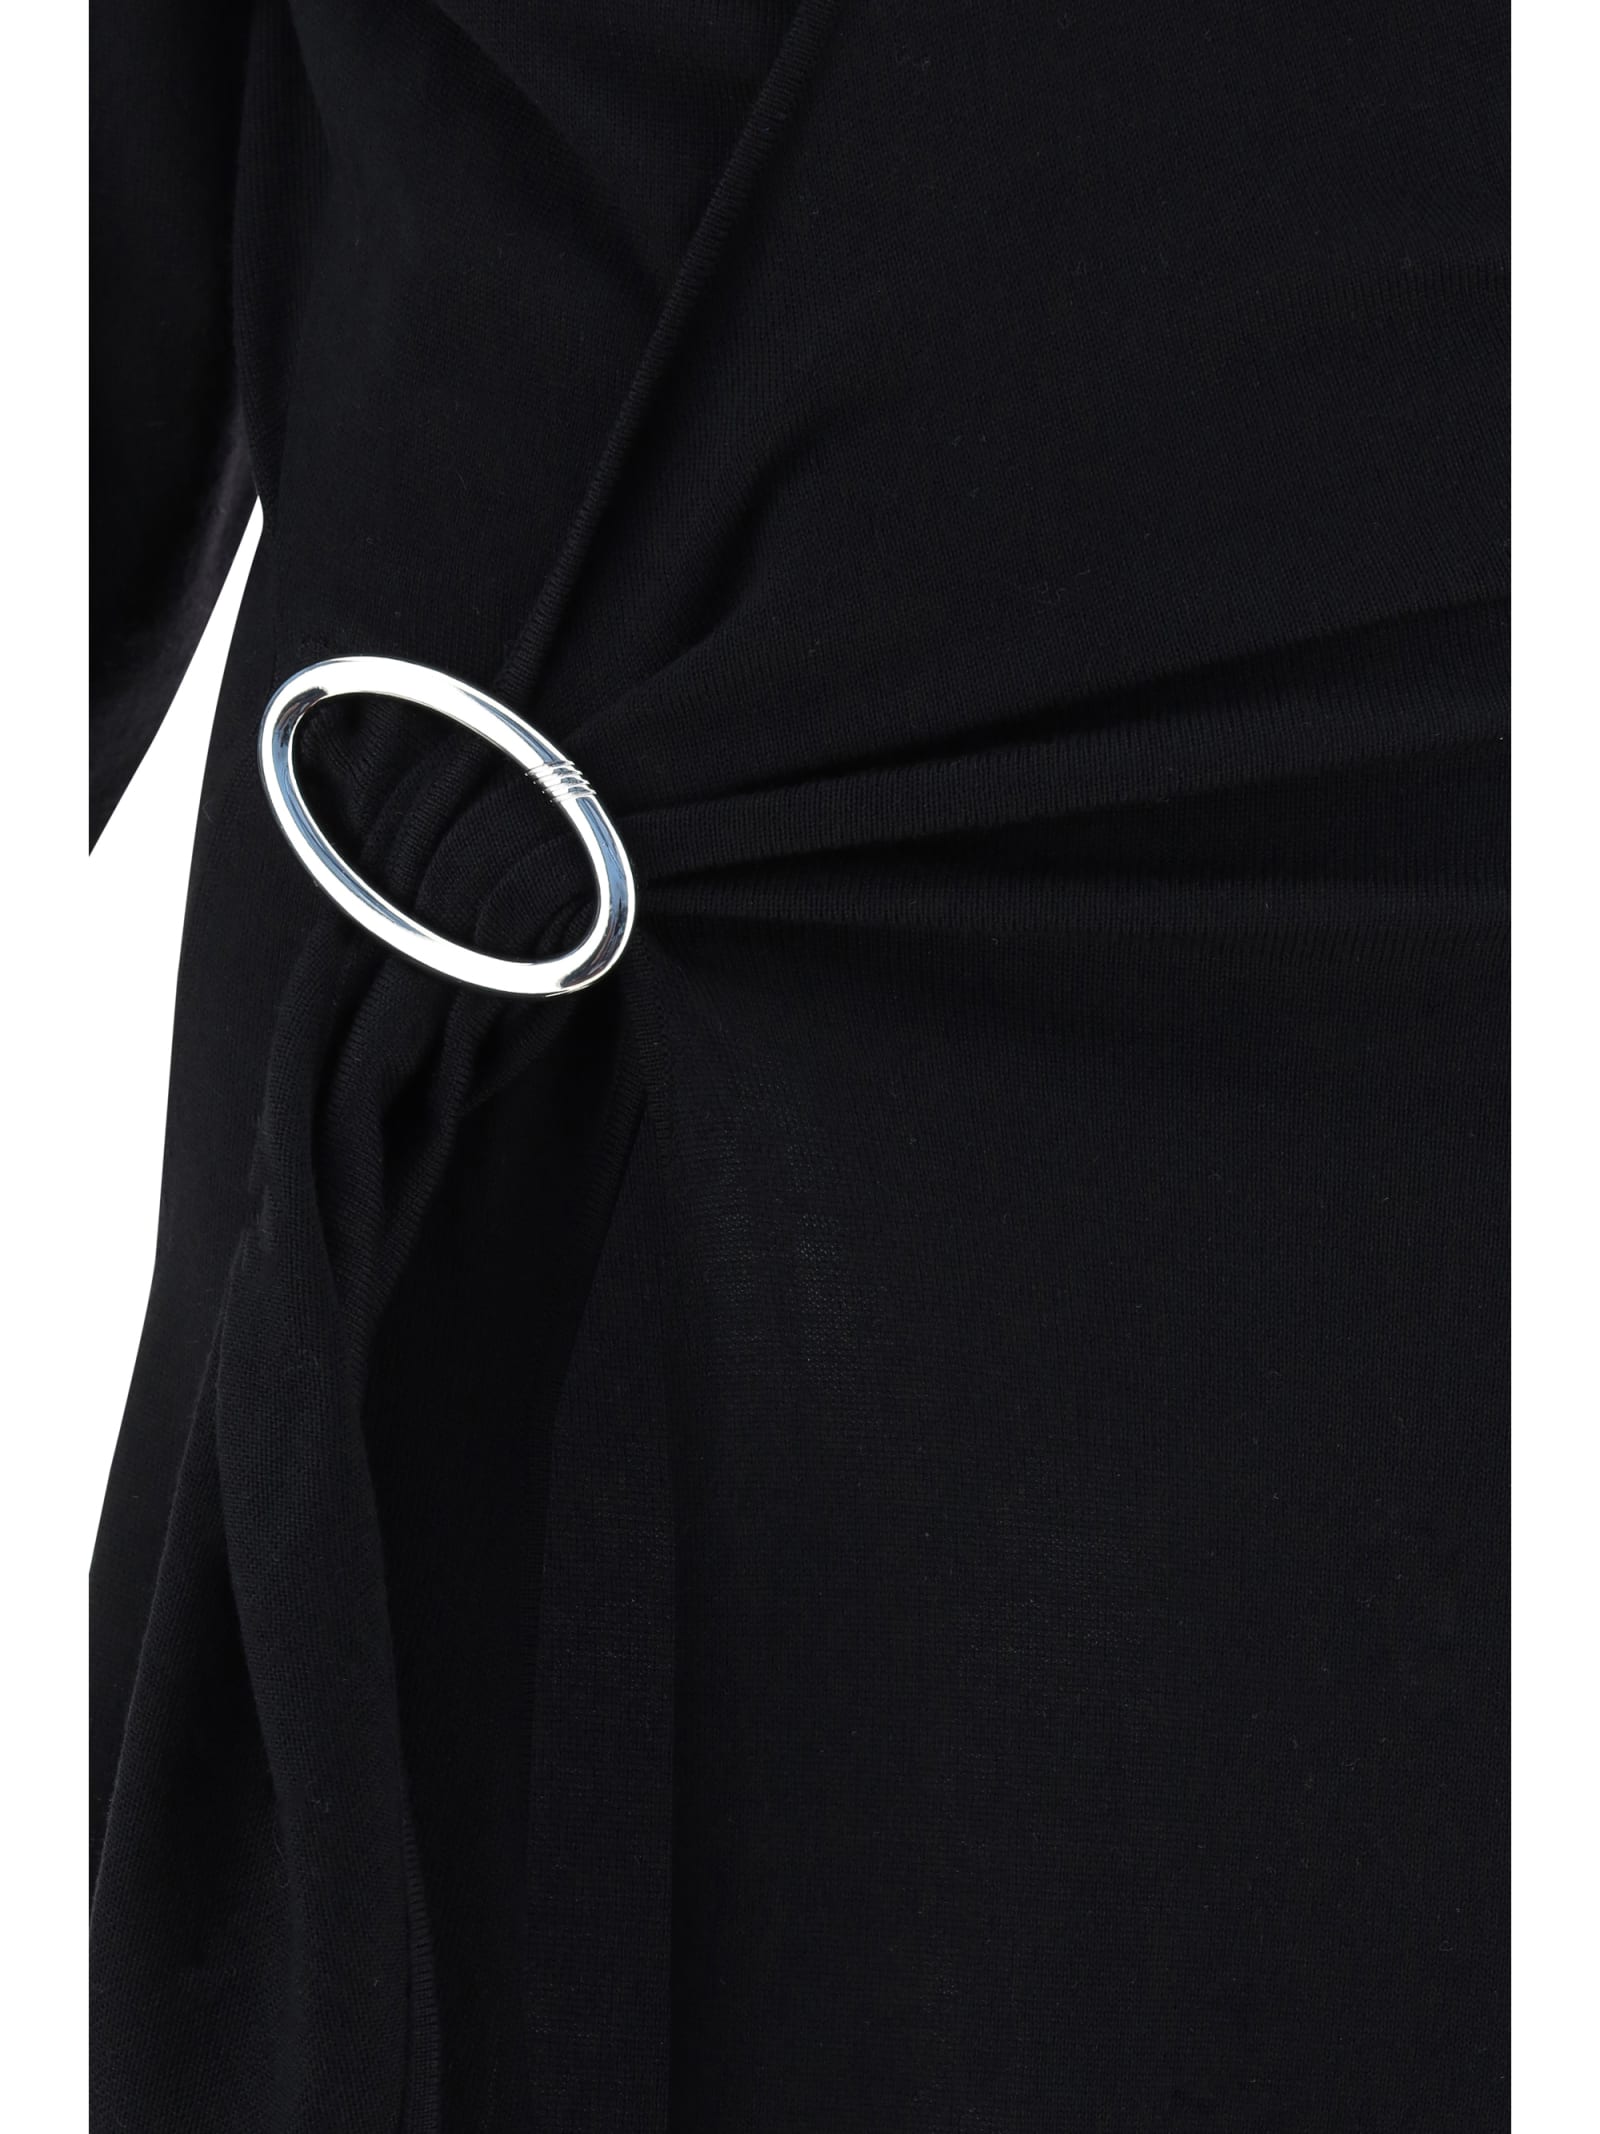 Shop Attico Atwell Midi Dress In Black